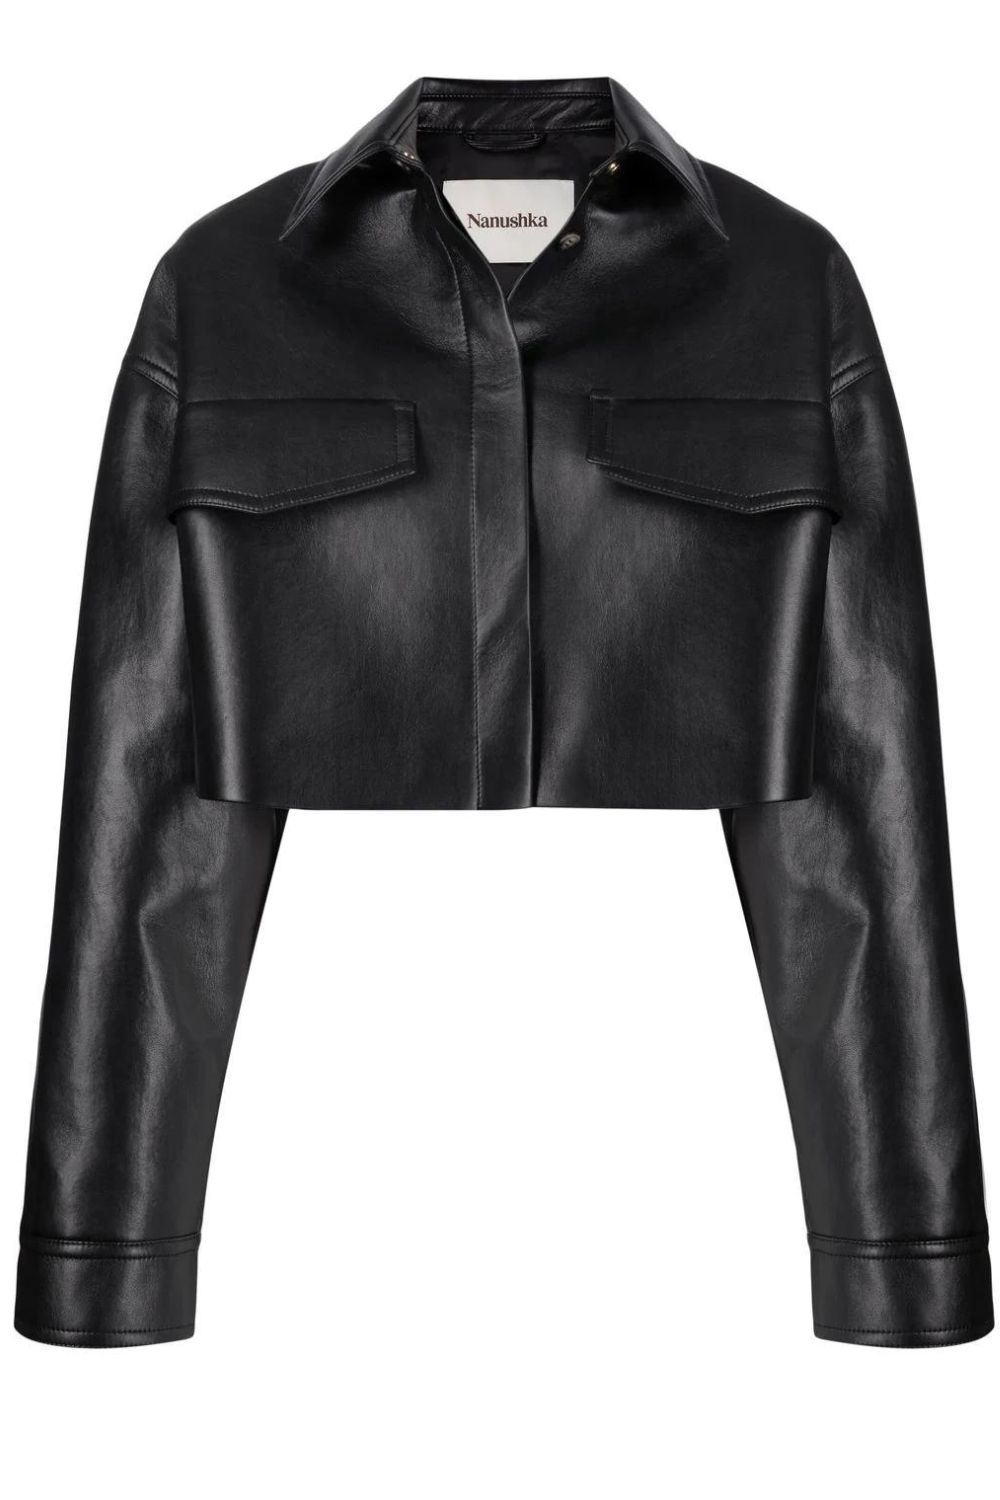 leather-jacket